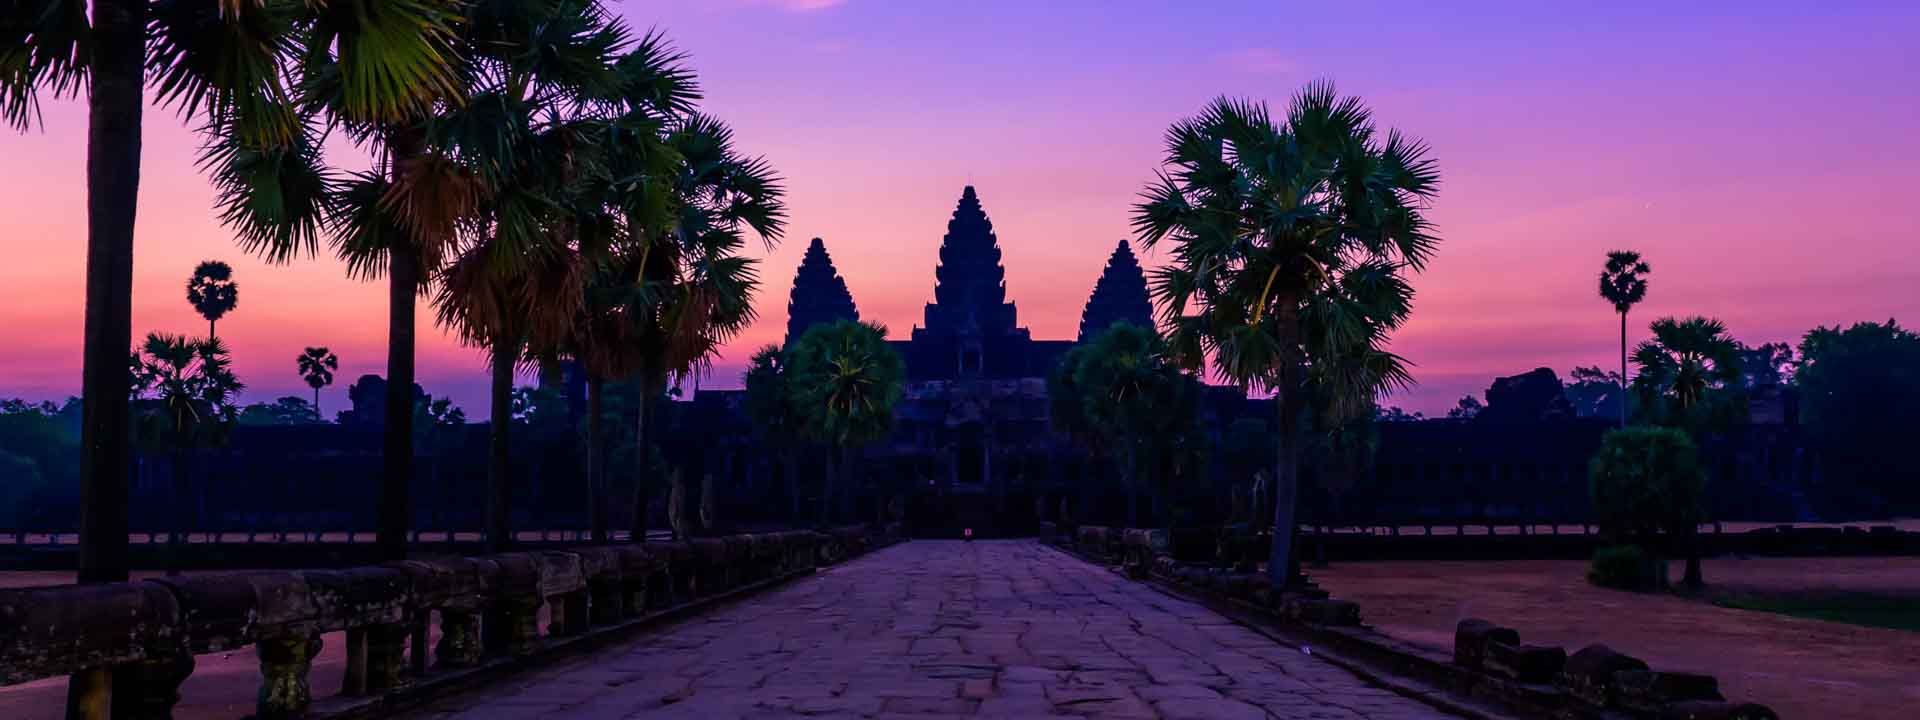 Vietnam cambodia tour 15 days